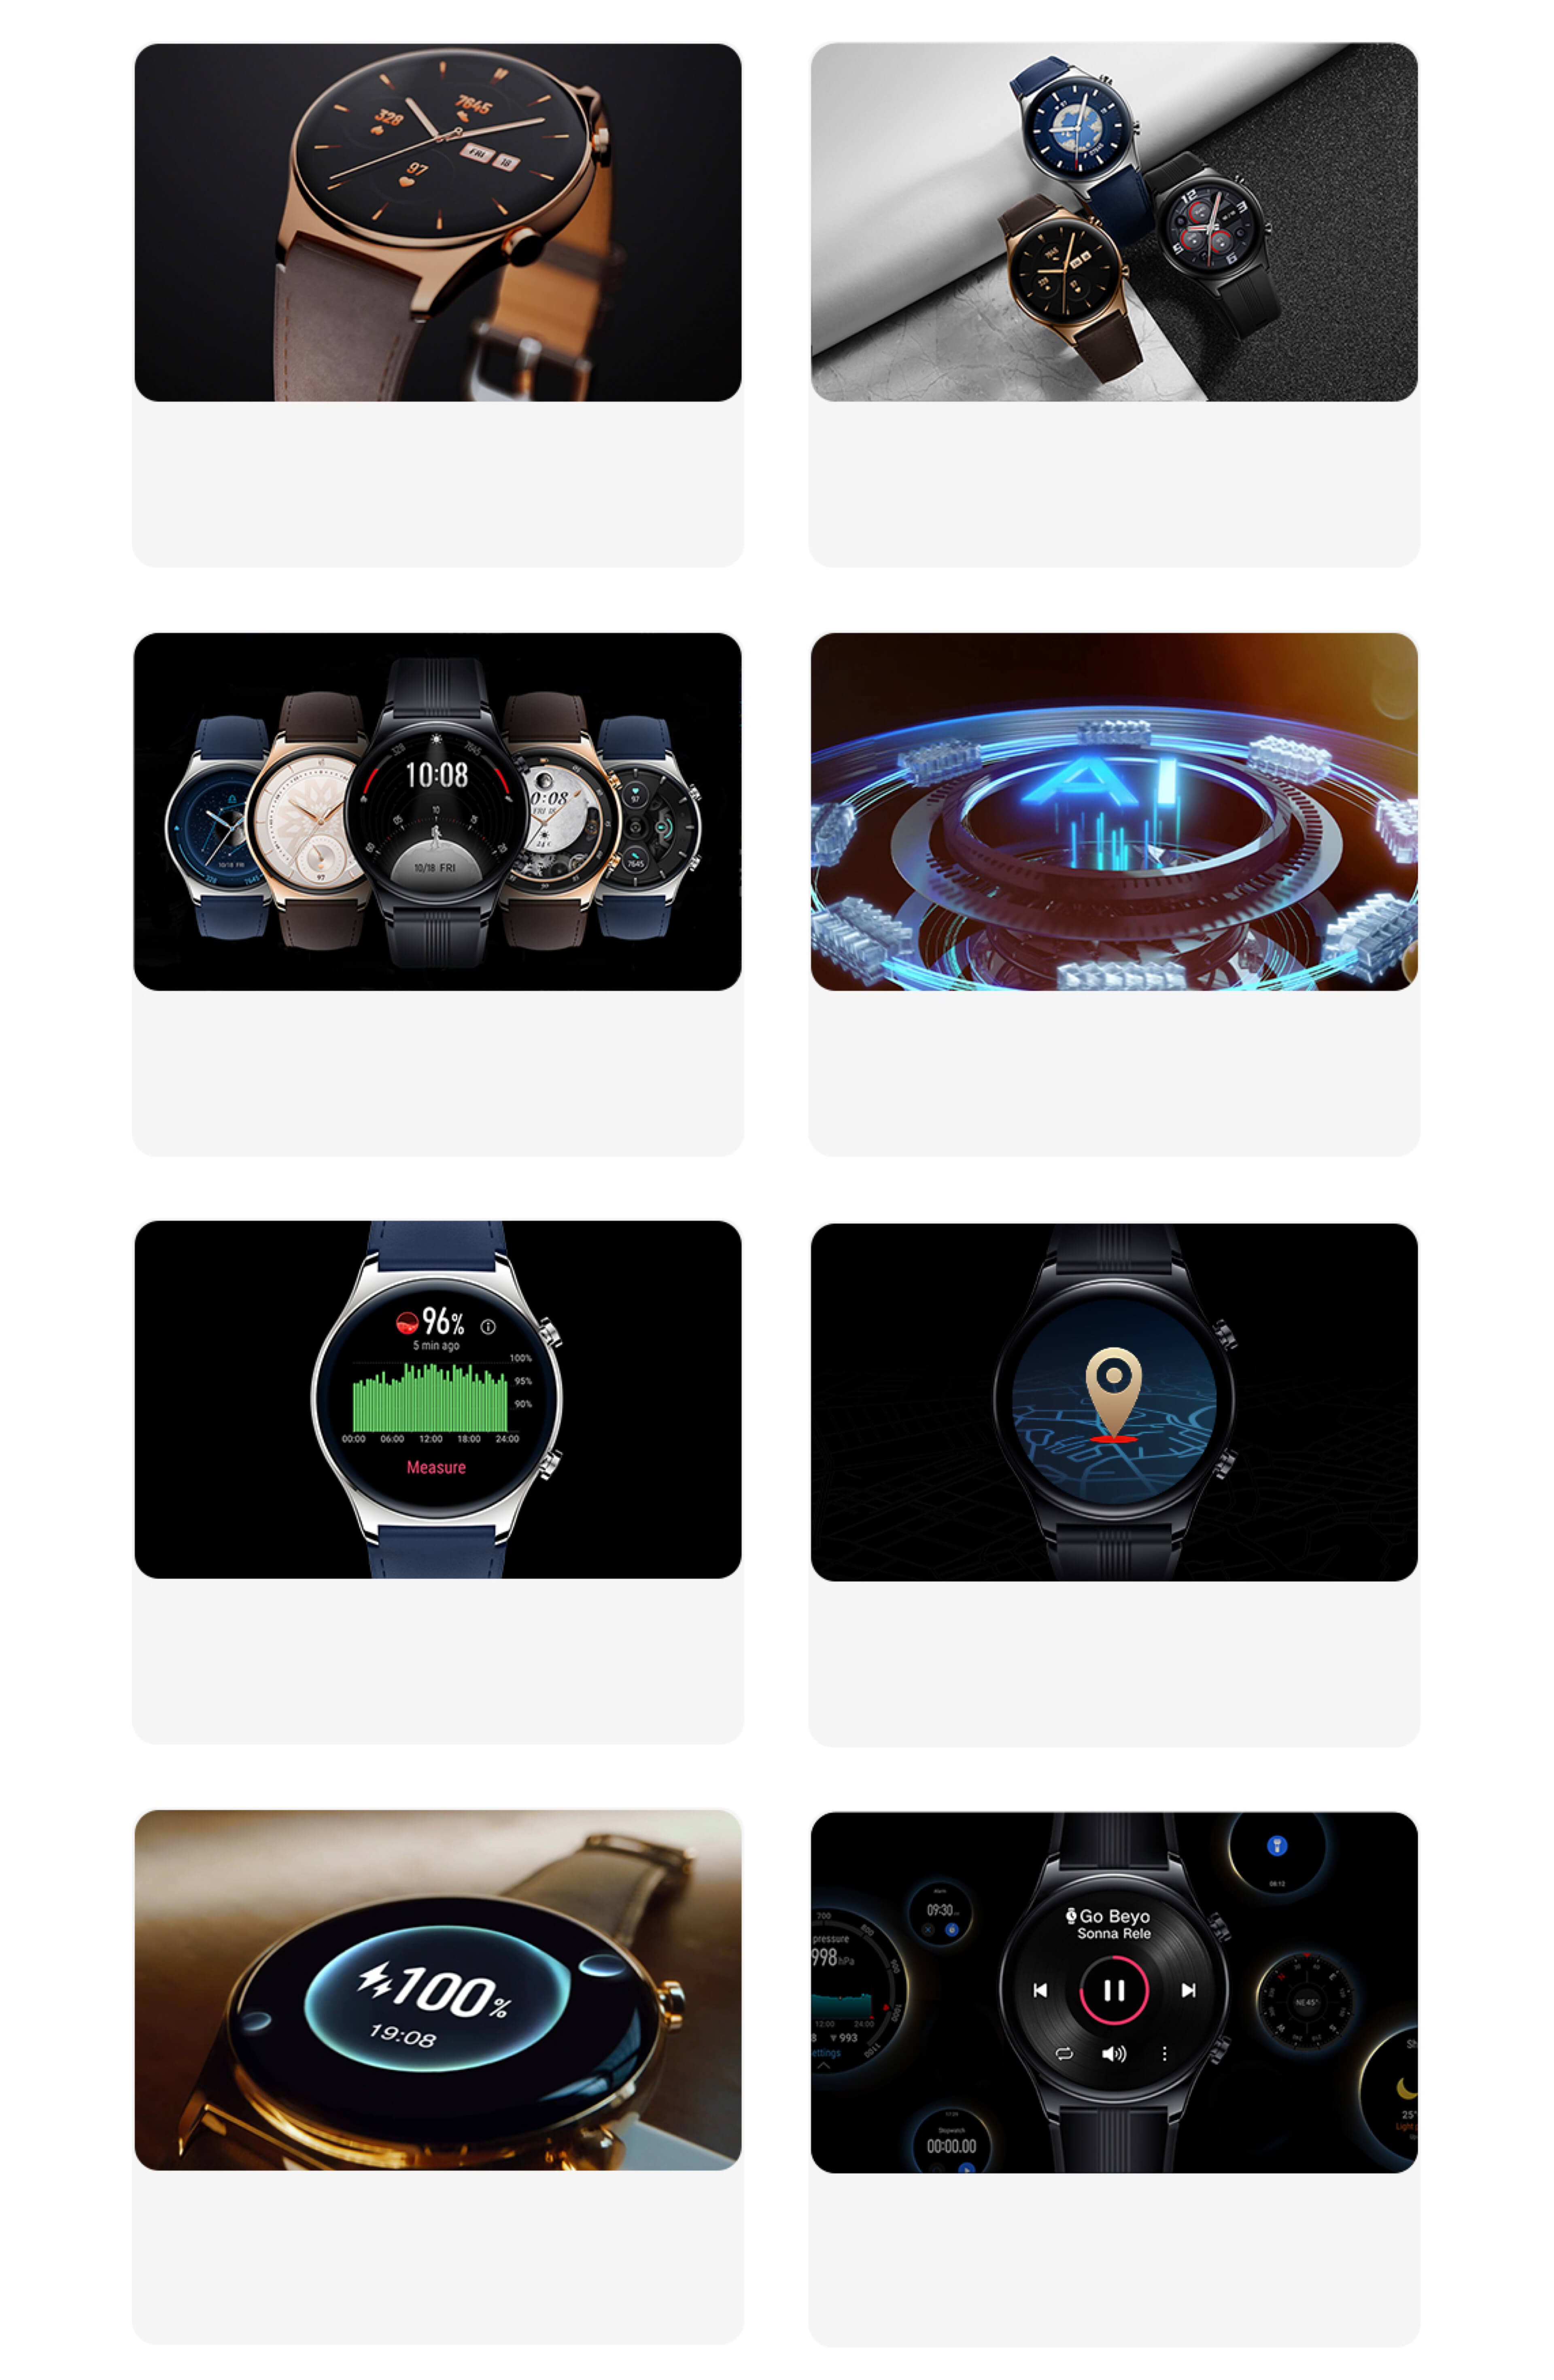 Otto caratteristiche di HONOR Watch GS 3:design sottile, tre colori, stili creativi, motore AI per la frequenza cardiaca, monitoraggio dell'ossigeno nel sangue, posizionamento preciso, carica rapida, assistente pratico.